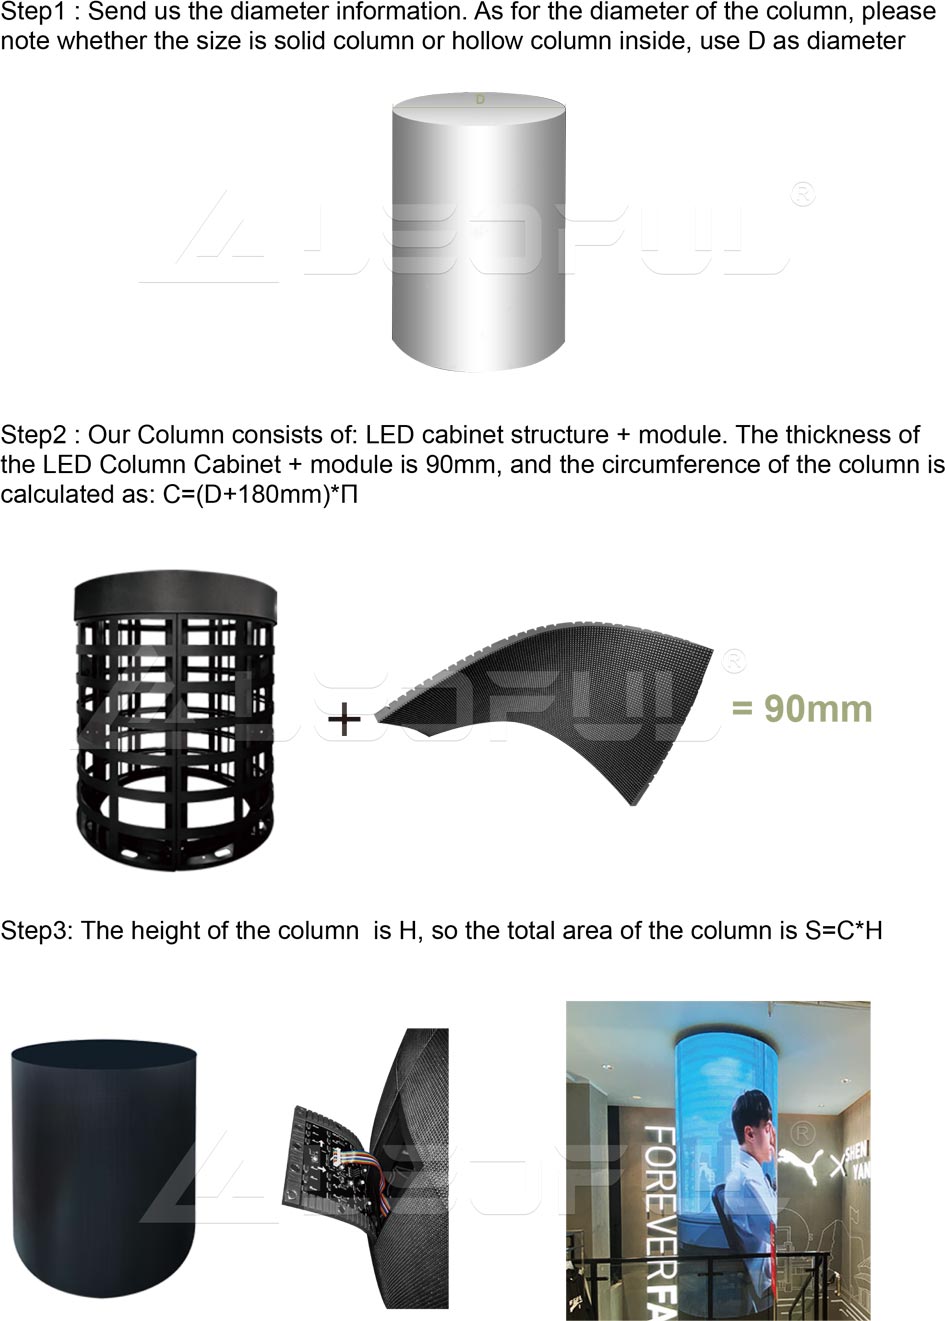 Как рассчитать общую площадь поверхности экрана Column Project